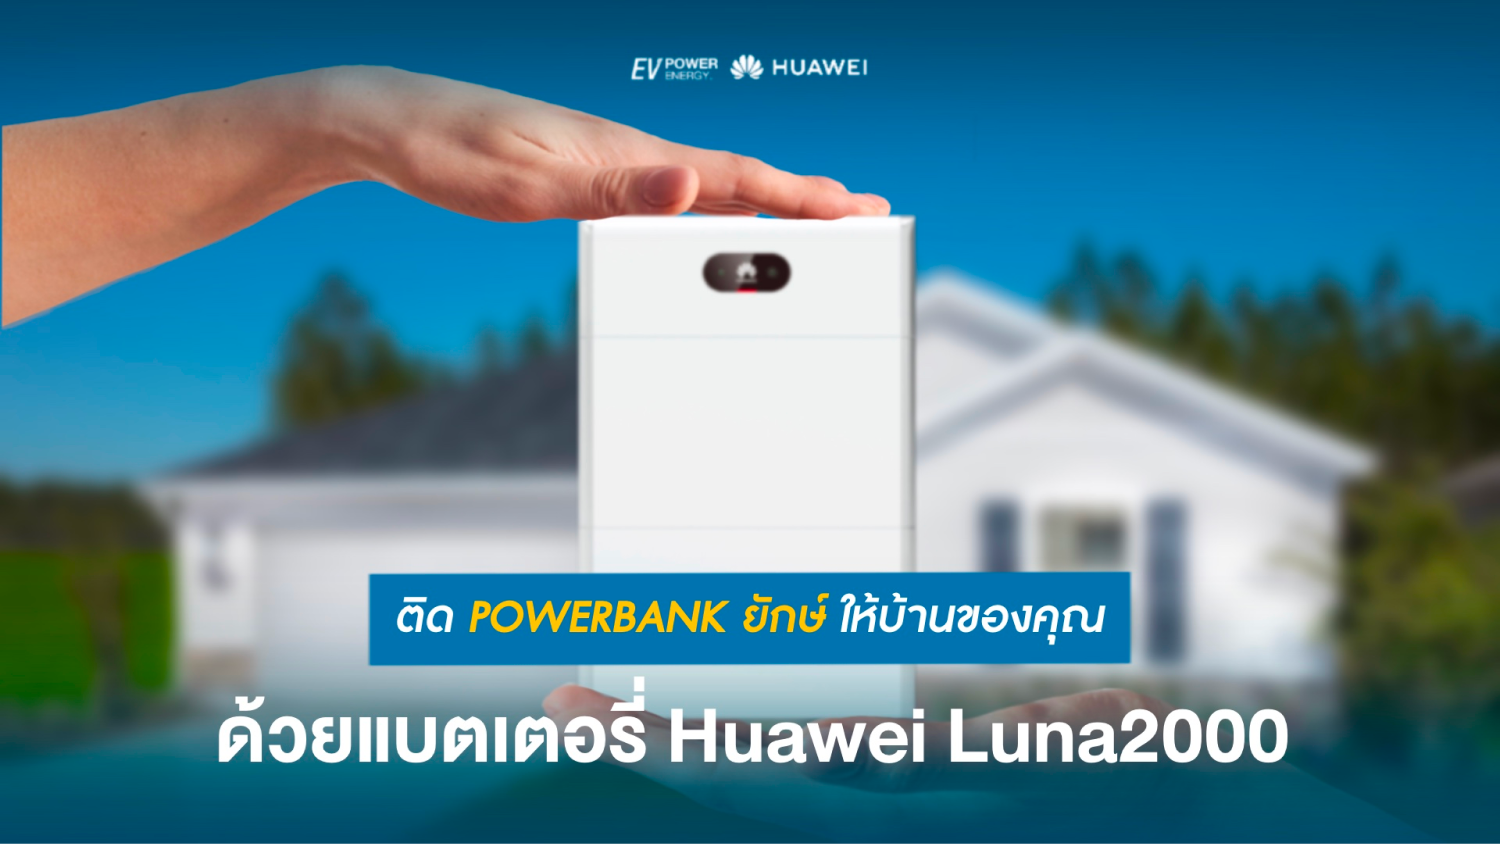 ติด Power Bank ยักษ์ให้บ้านของคุณ ด้วยแบตเตอรี่ Huawei Lana 2000 1